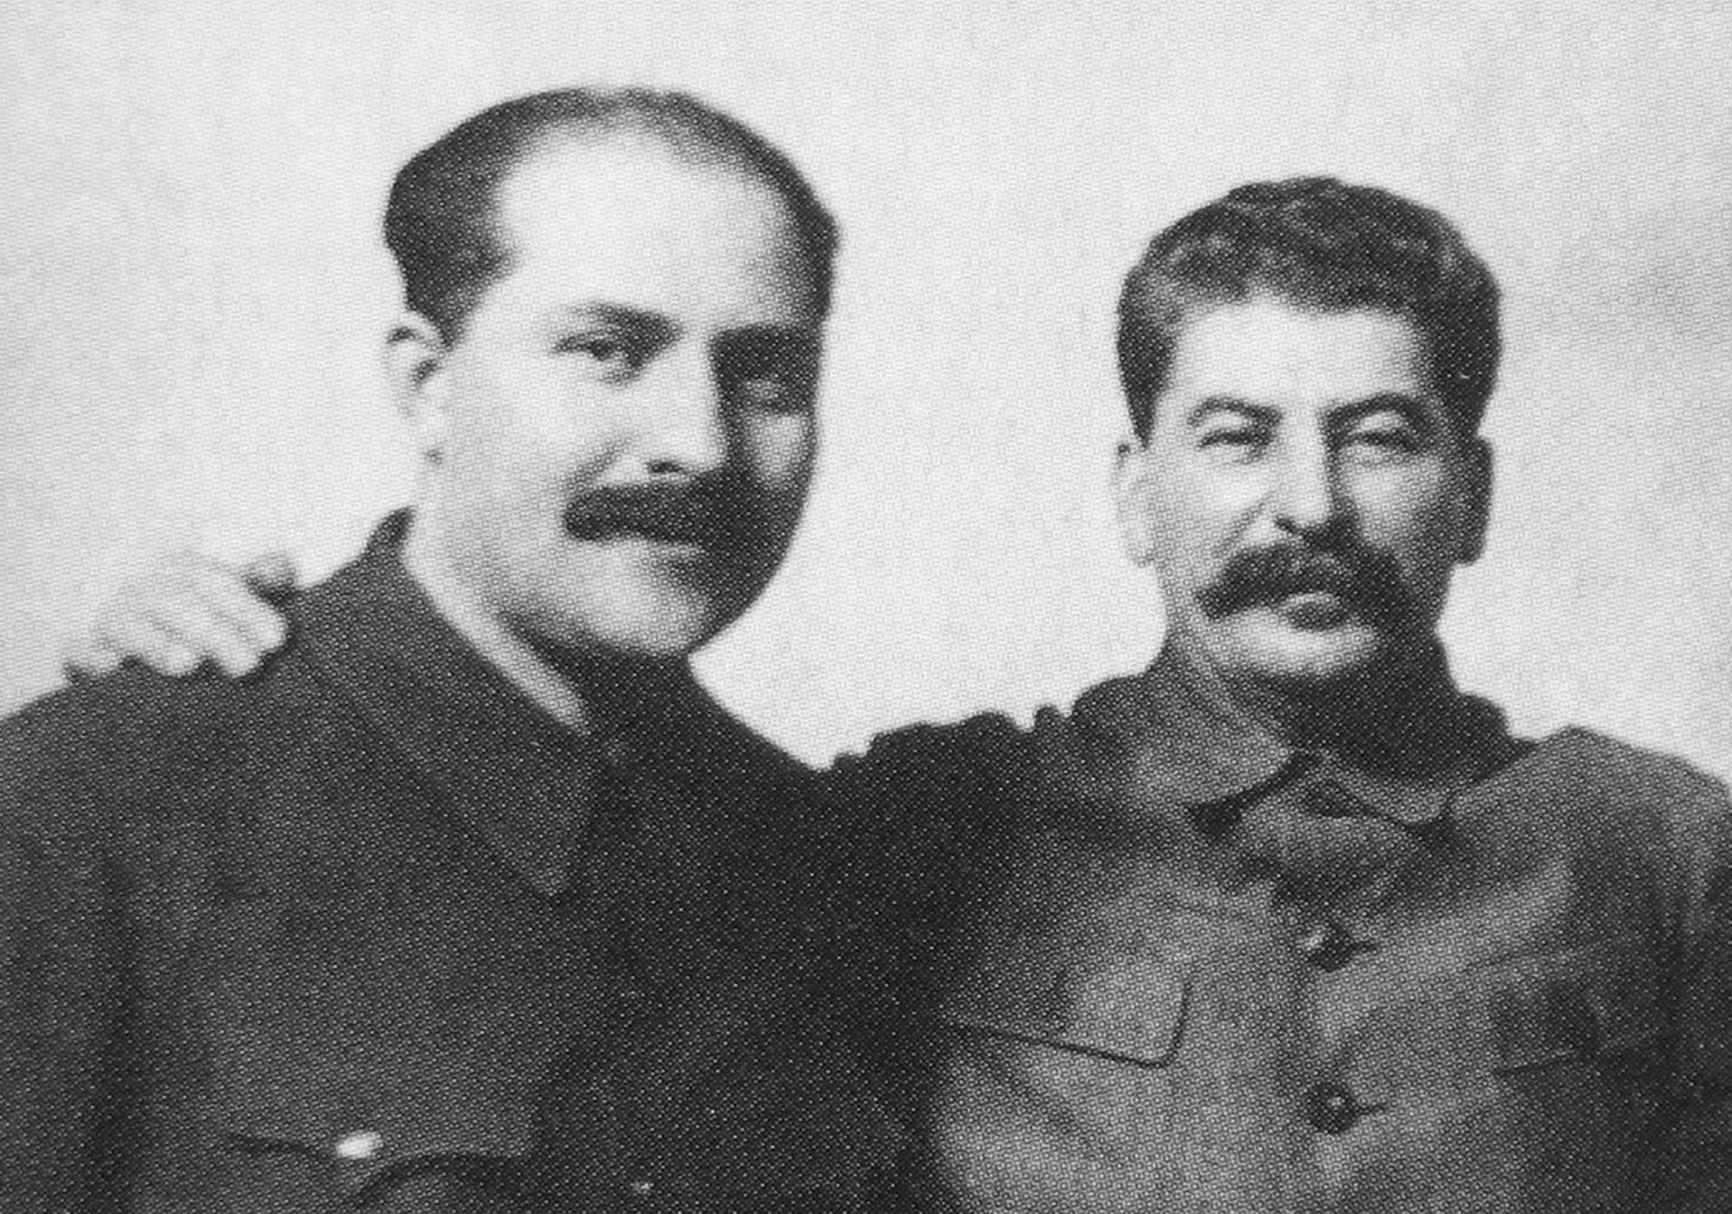 Lazar Kaganovich and Joseph Stalin